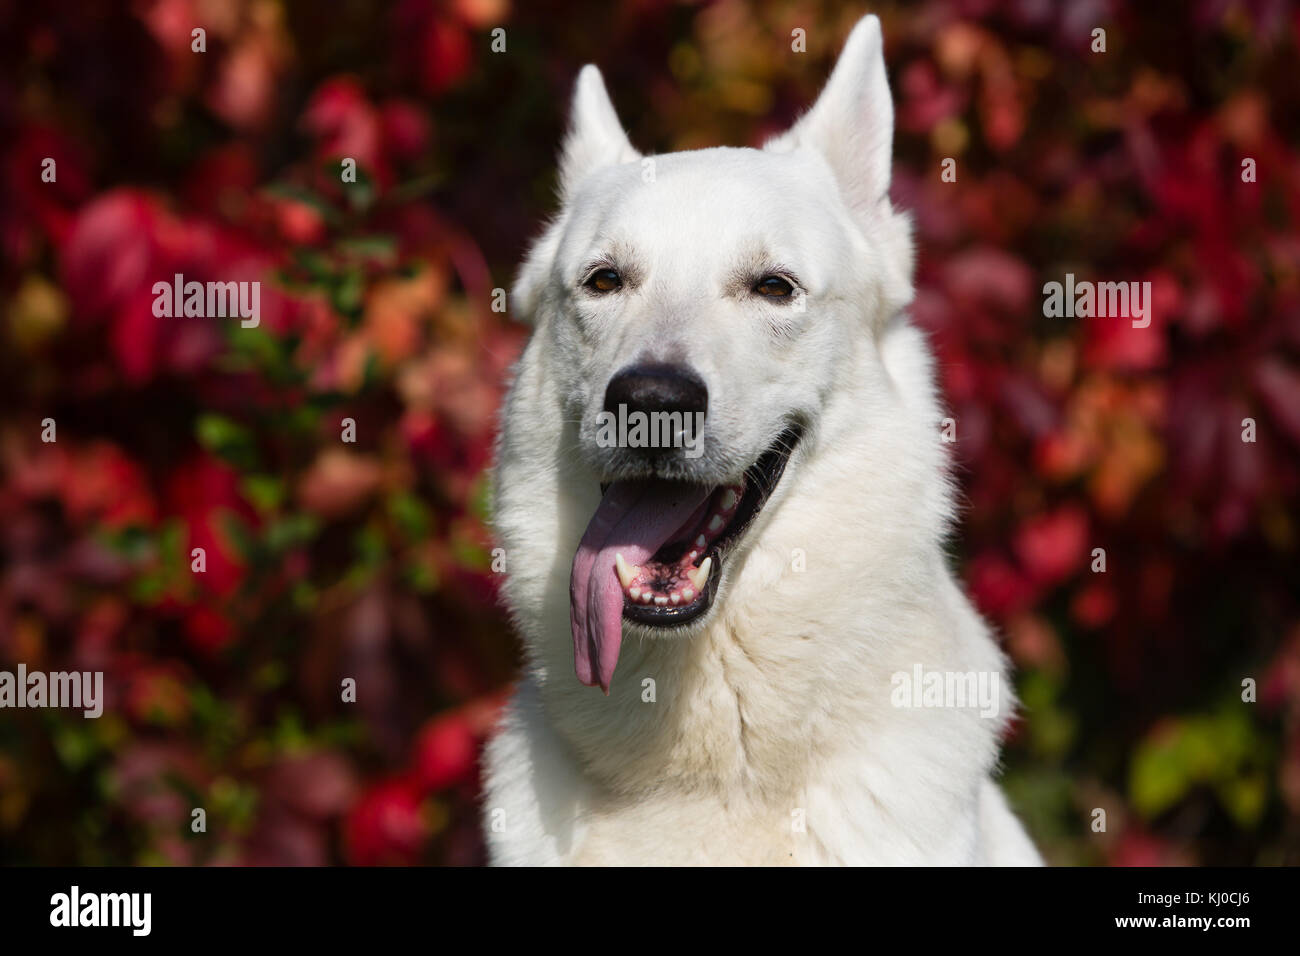 White Swiss shepherd dog Stock Photo